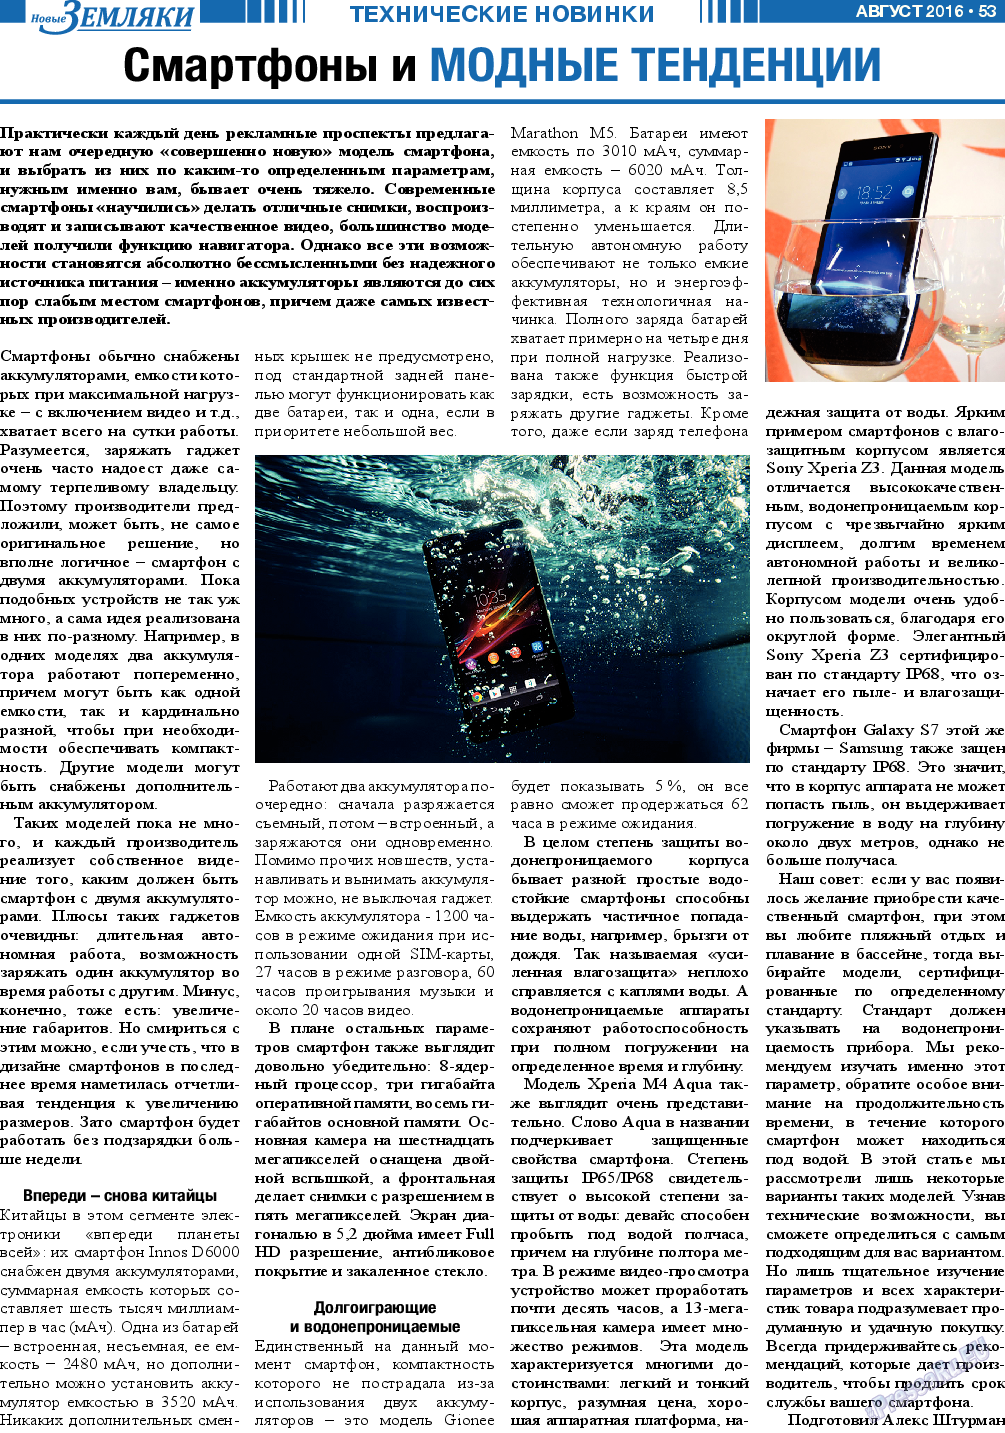 Новые Земляки (газета). 2016 год, номер 8, стр. 53